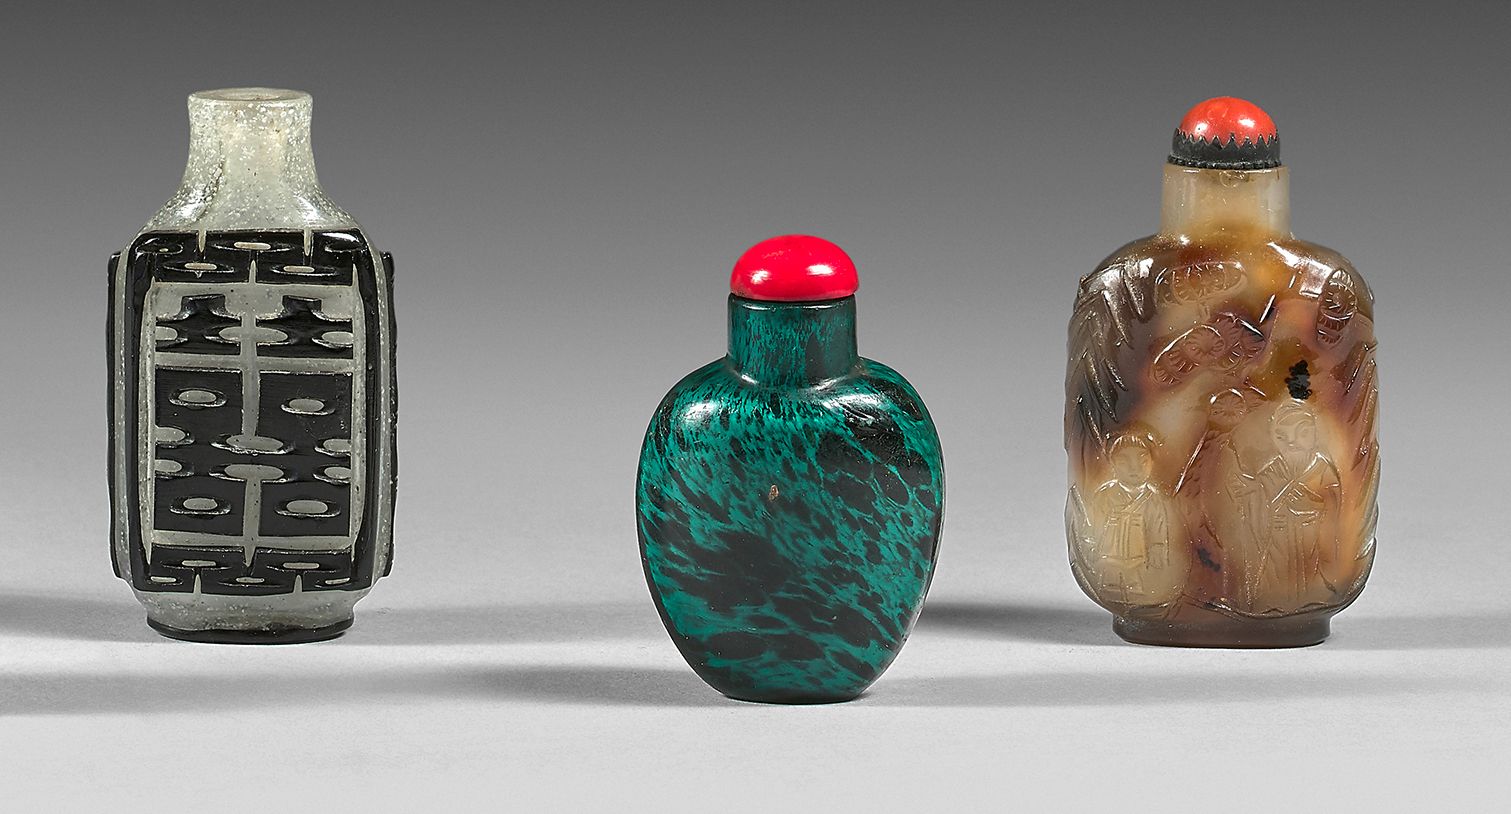 CHINE 四个鼻烟壶，两个是玻璃的，一个是仿孔雀石的，一个是黑色覆膜的，装饰着双喜的标志，一个是玛瑙的，雕刻着松树下的人物装饰，另一个是烟熏水晶 ?
高度：从&hellip;